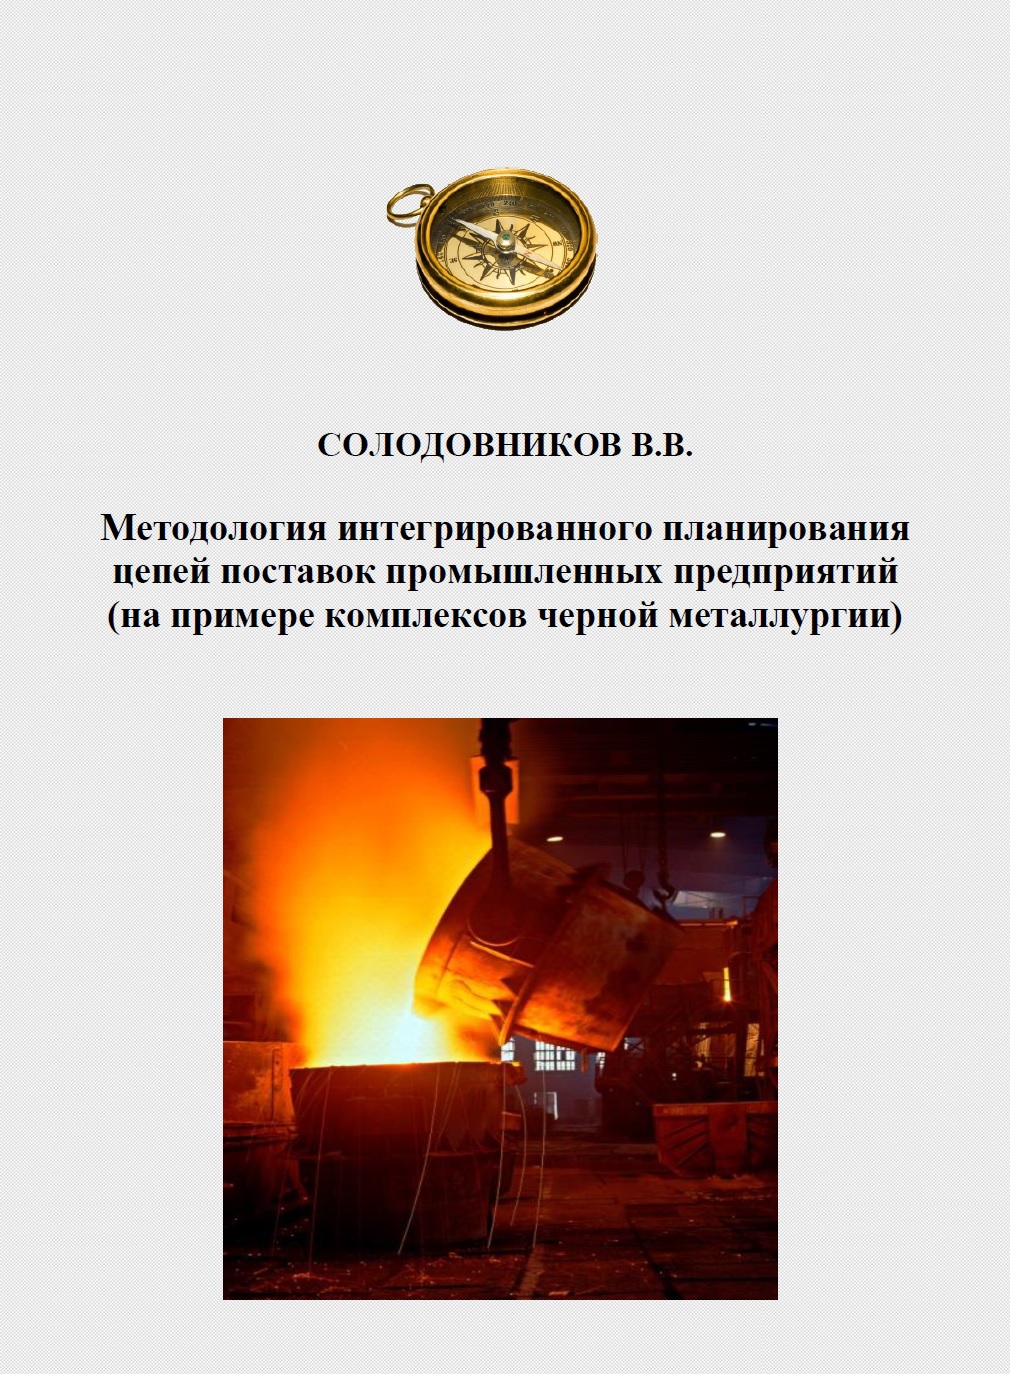 Методология интегрированного планирования цепей поставок промышленных предприятий (на примере комплексов черной металлургии)